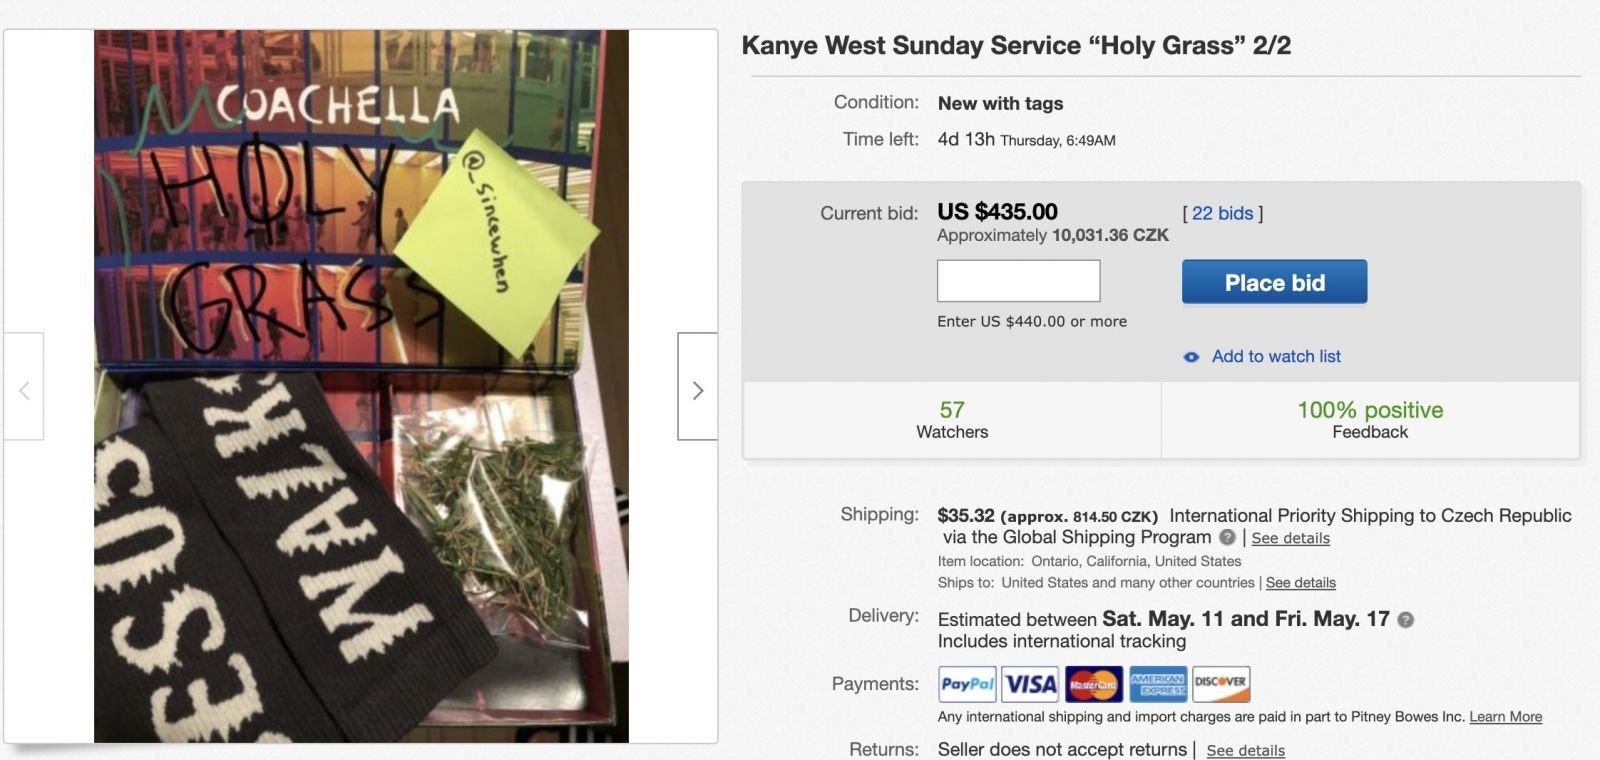 Kanye West buduje vlastnú cirkev gospelovými koncertami. „Svätá tráva“ z poľa, kde raper vystupoval, sa predáva za stovky dolárov